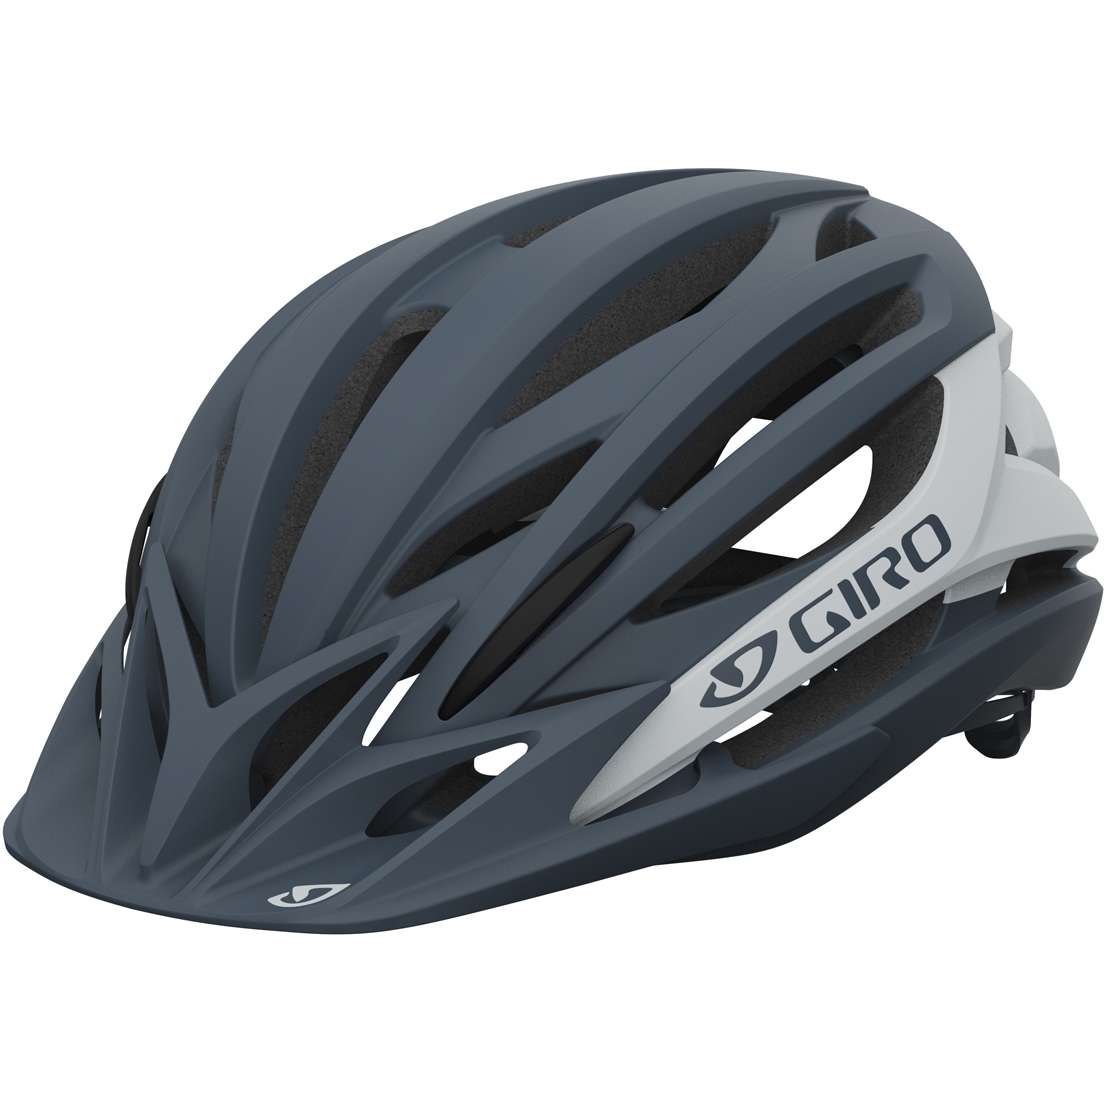 Picture of Giro Artex MIPS Helmet - matte portaro grey